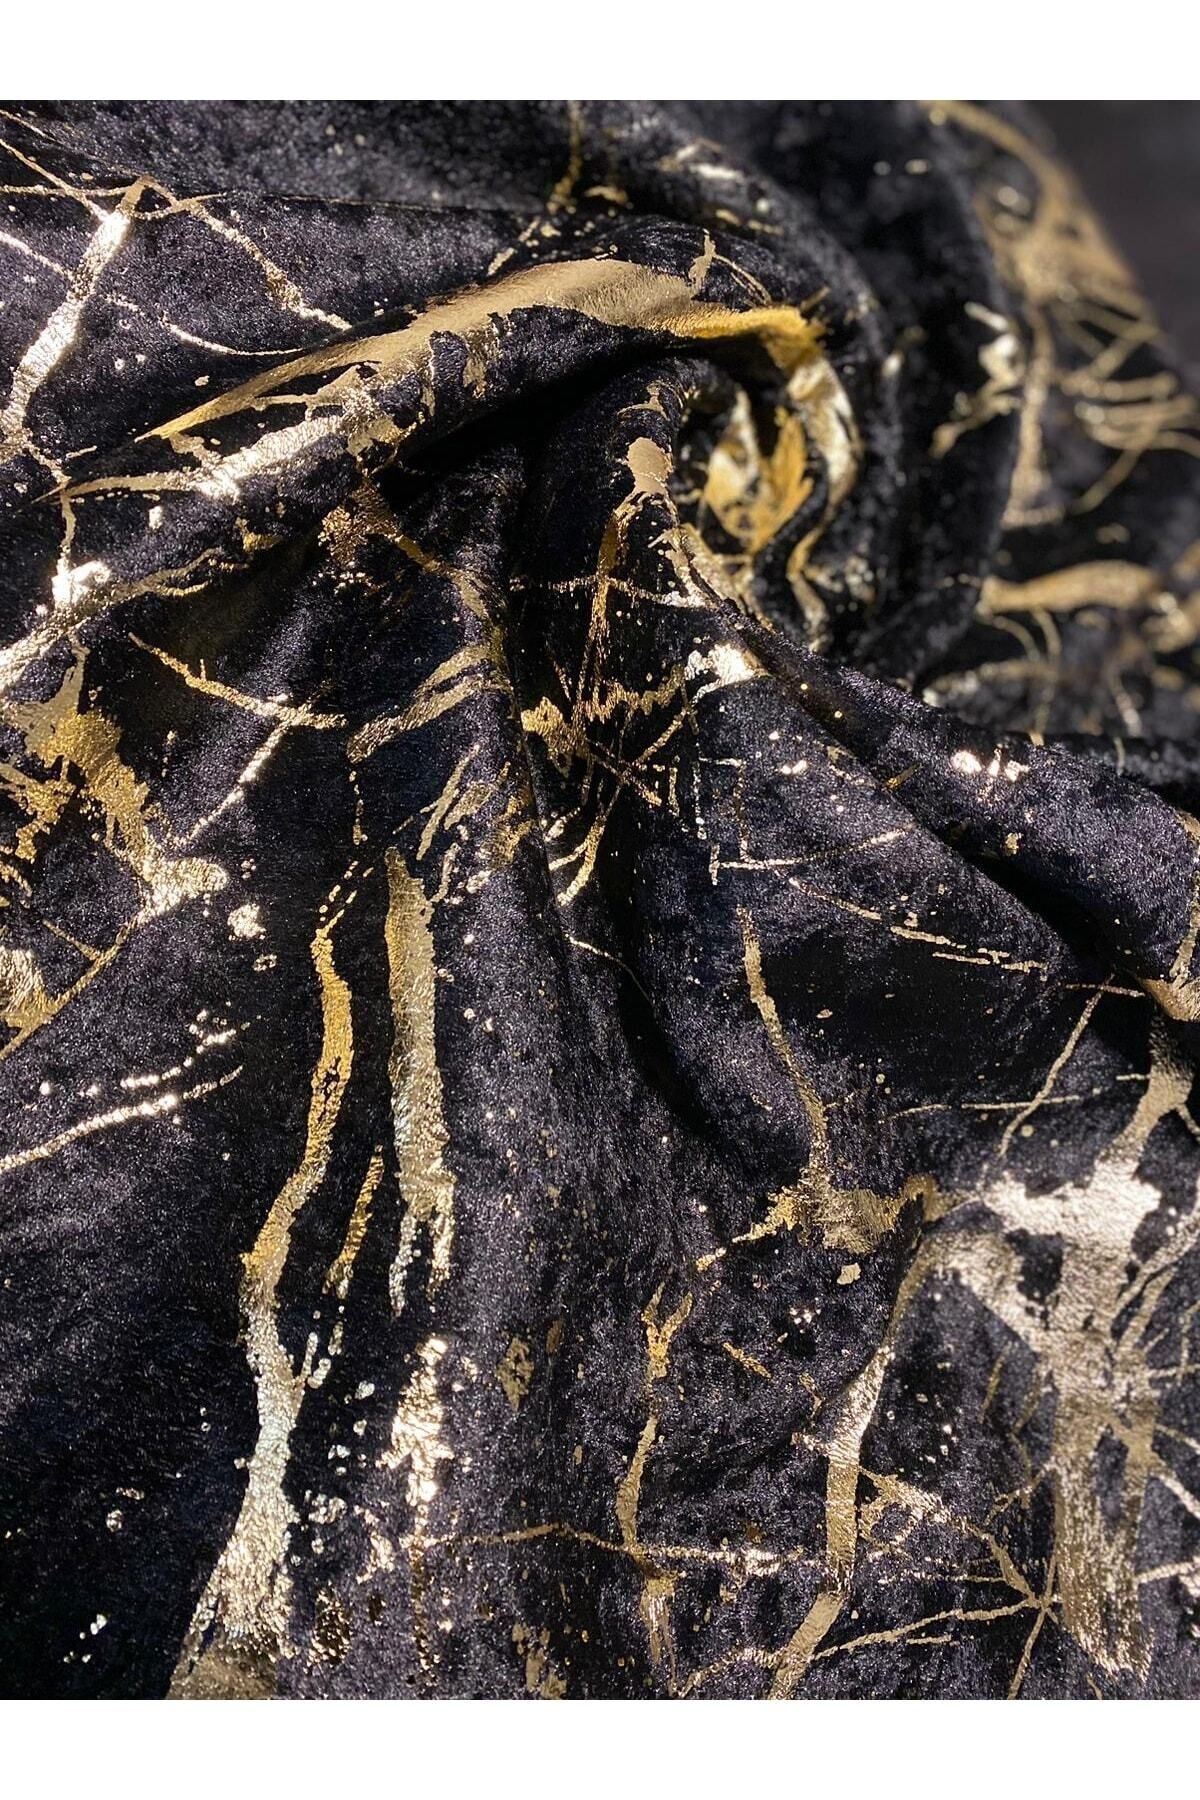 FavoriTeks Koltuk Çekyat Örtüsü Yeni Moda Altın Varaklı Dekoratif Siyah Zemin Süngerli Koltuk Örtüsü